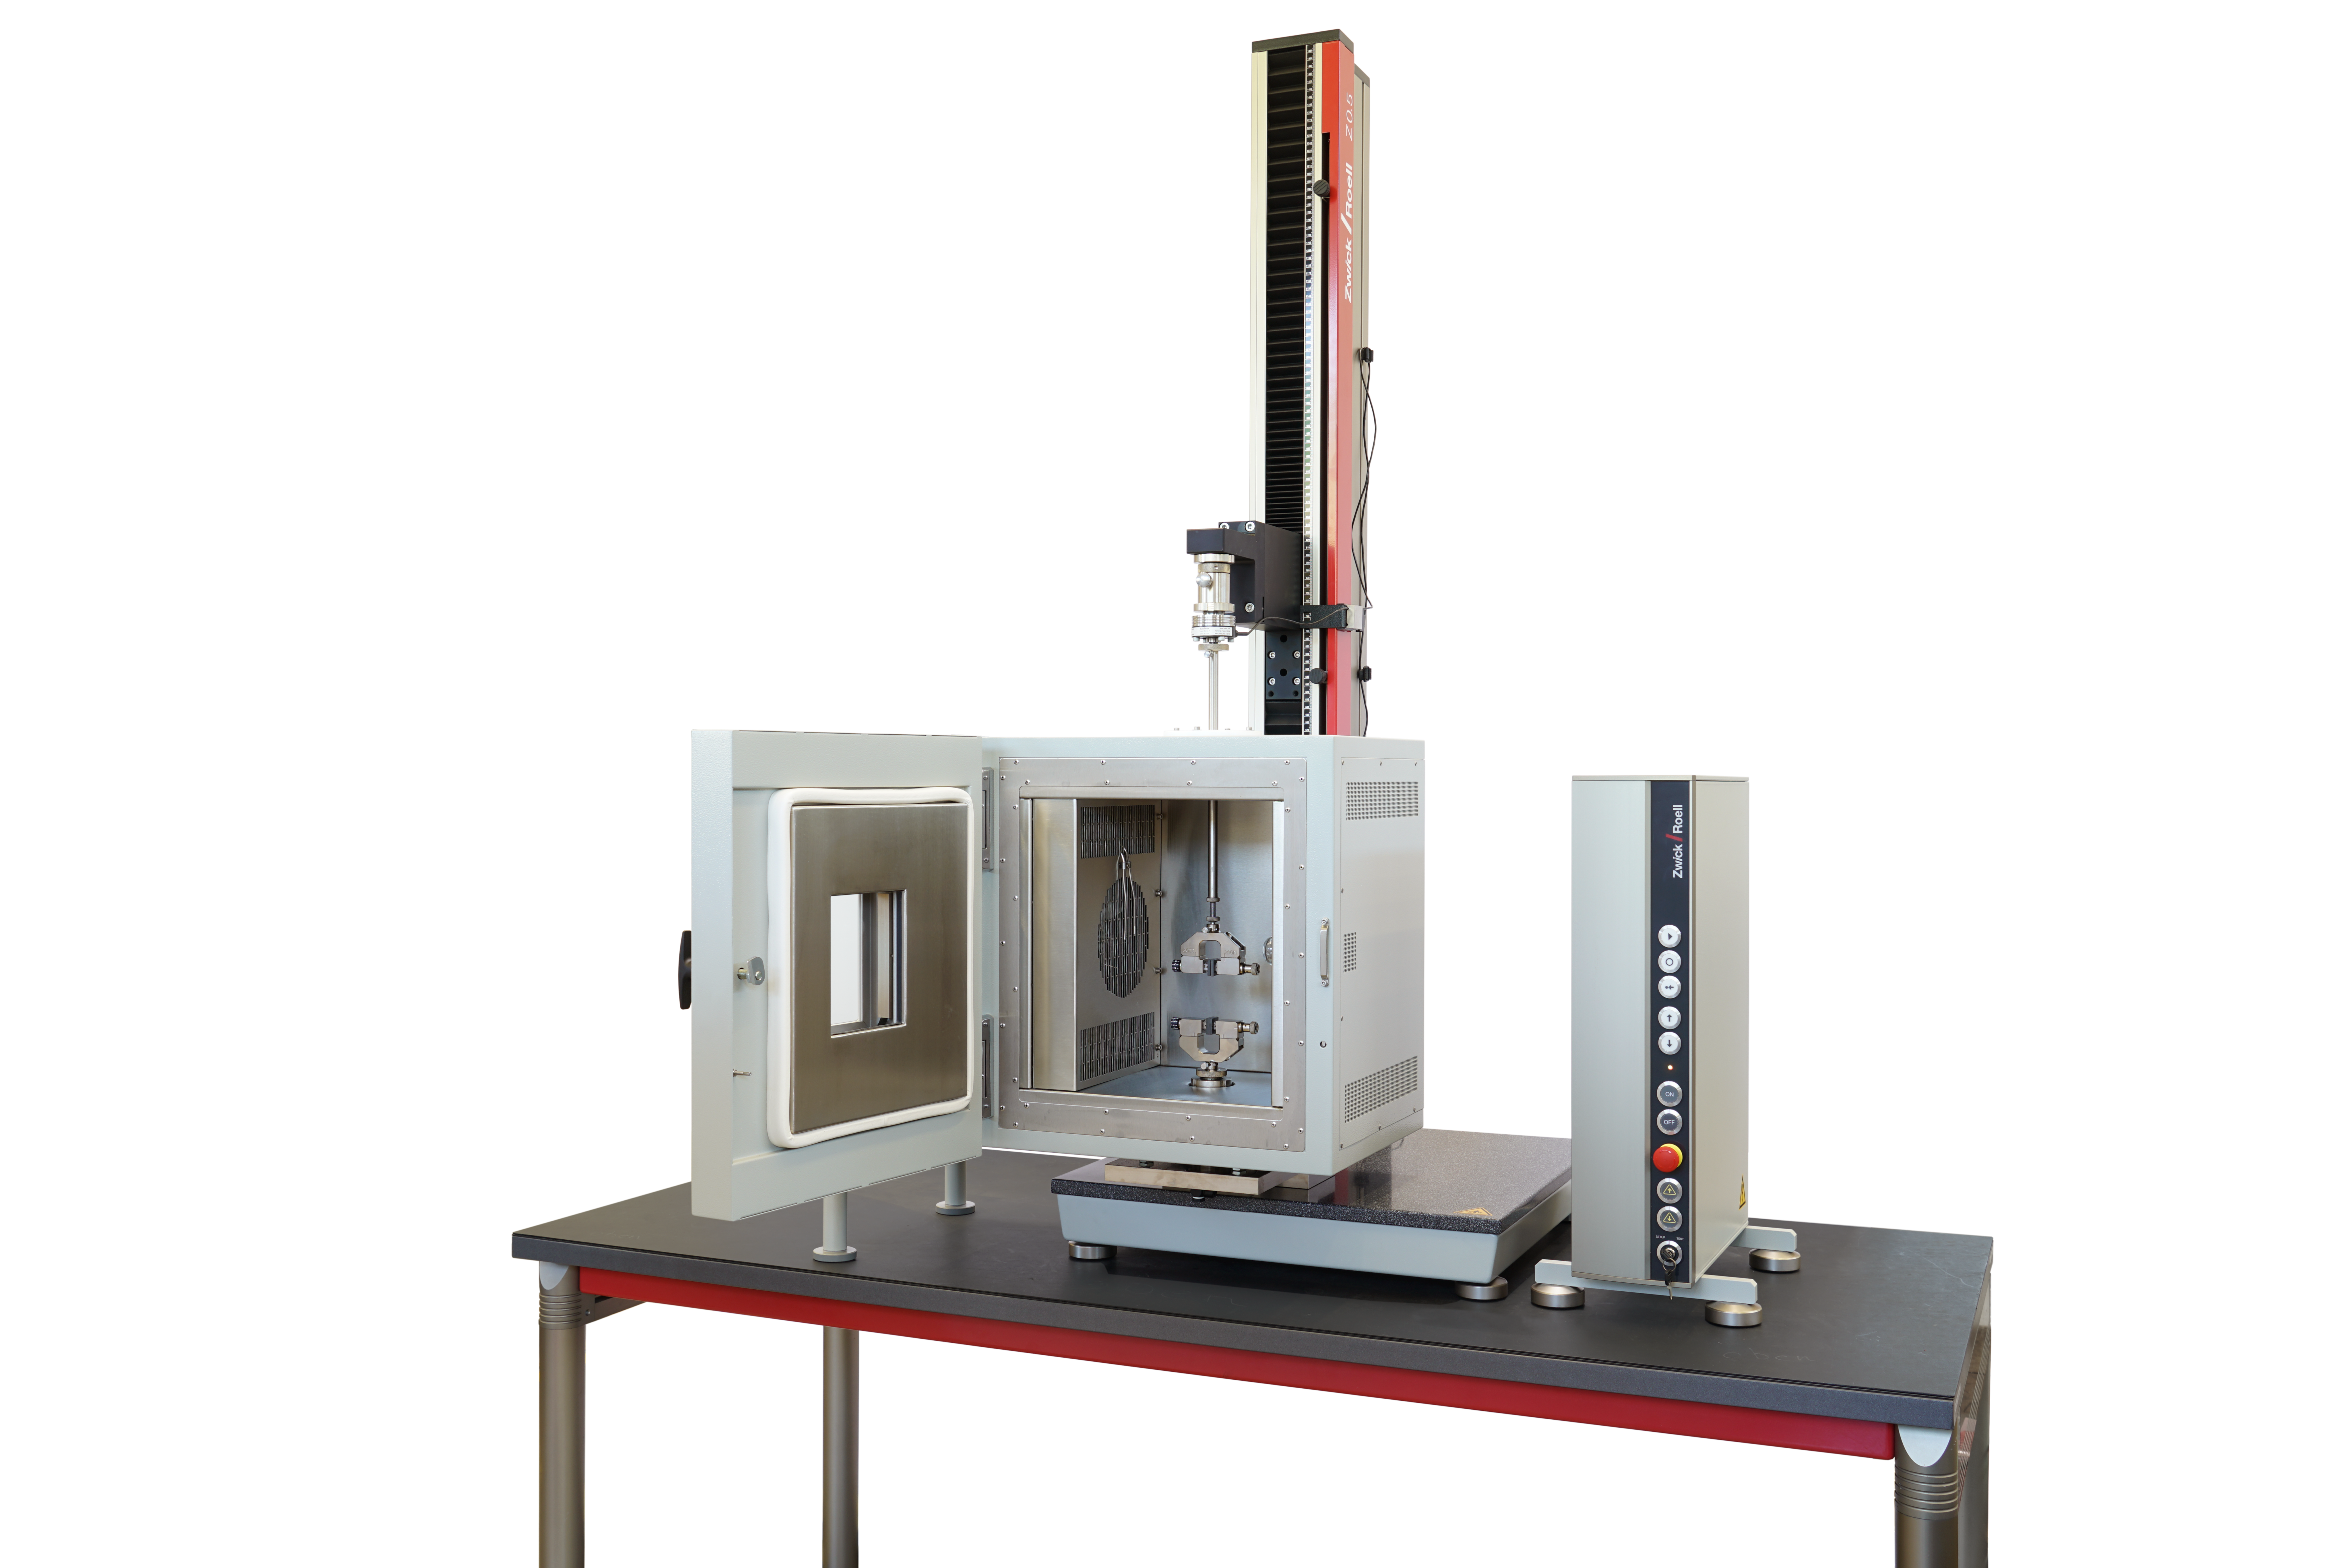 Teplotní komora pro zkušební stroj zwickiLine do 2,5 kN s teplotním rozsahem od -50 °C do +180 °C